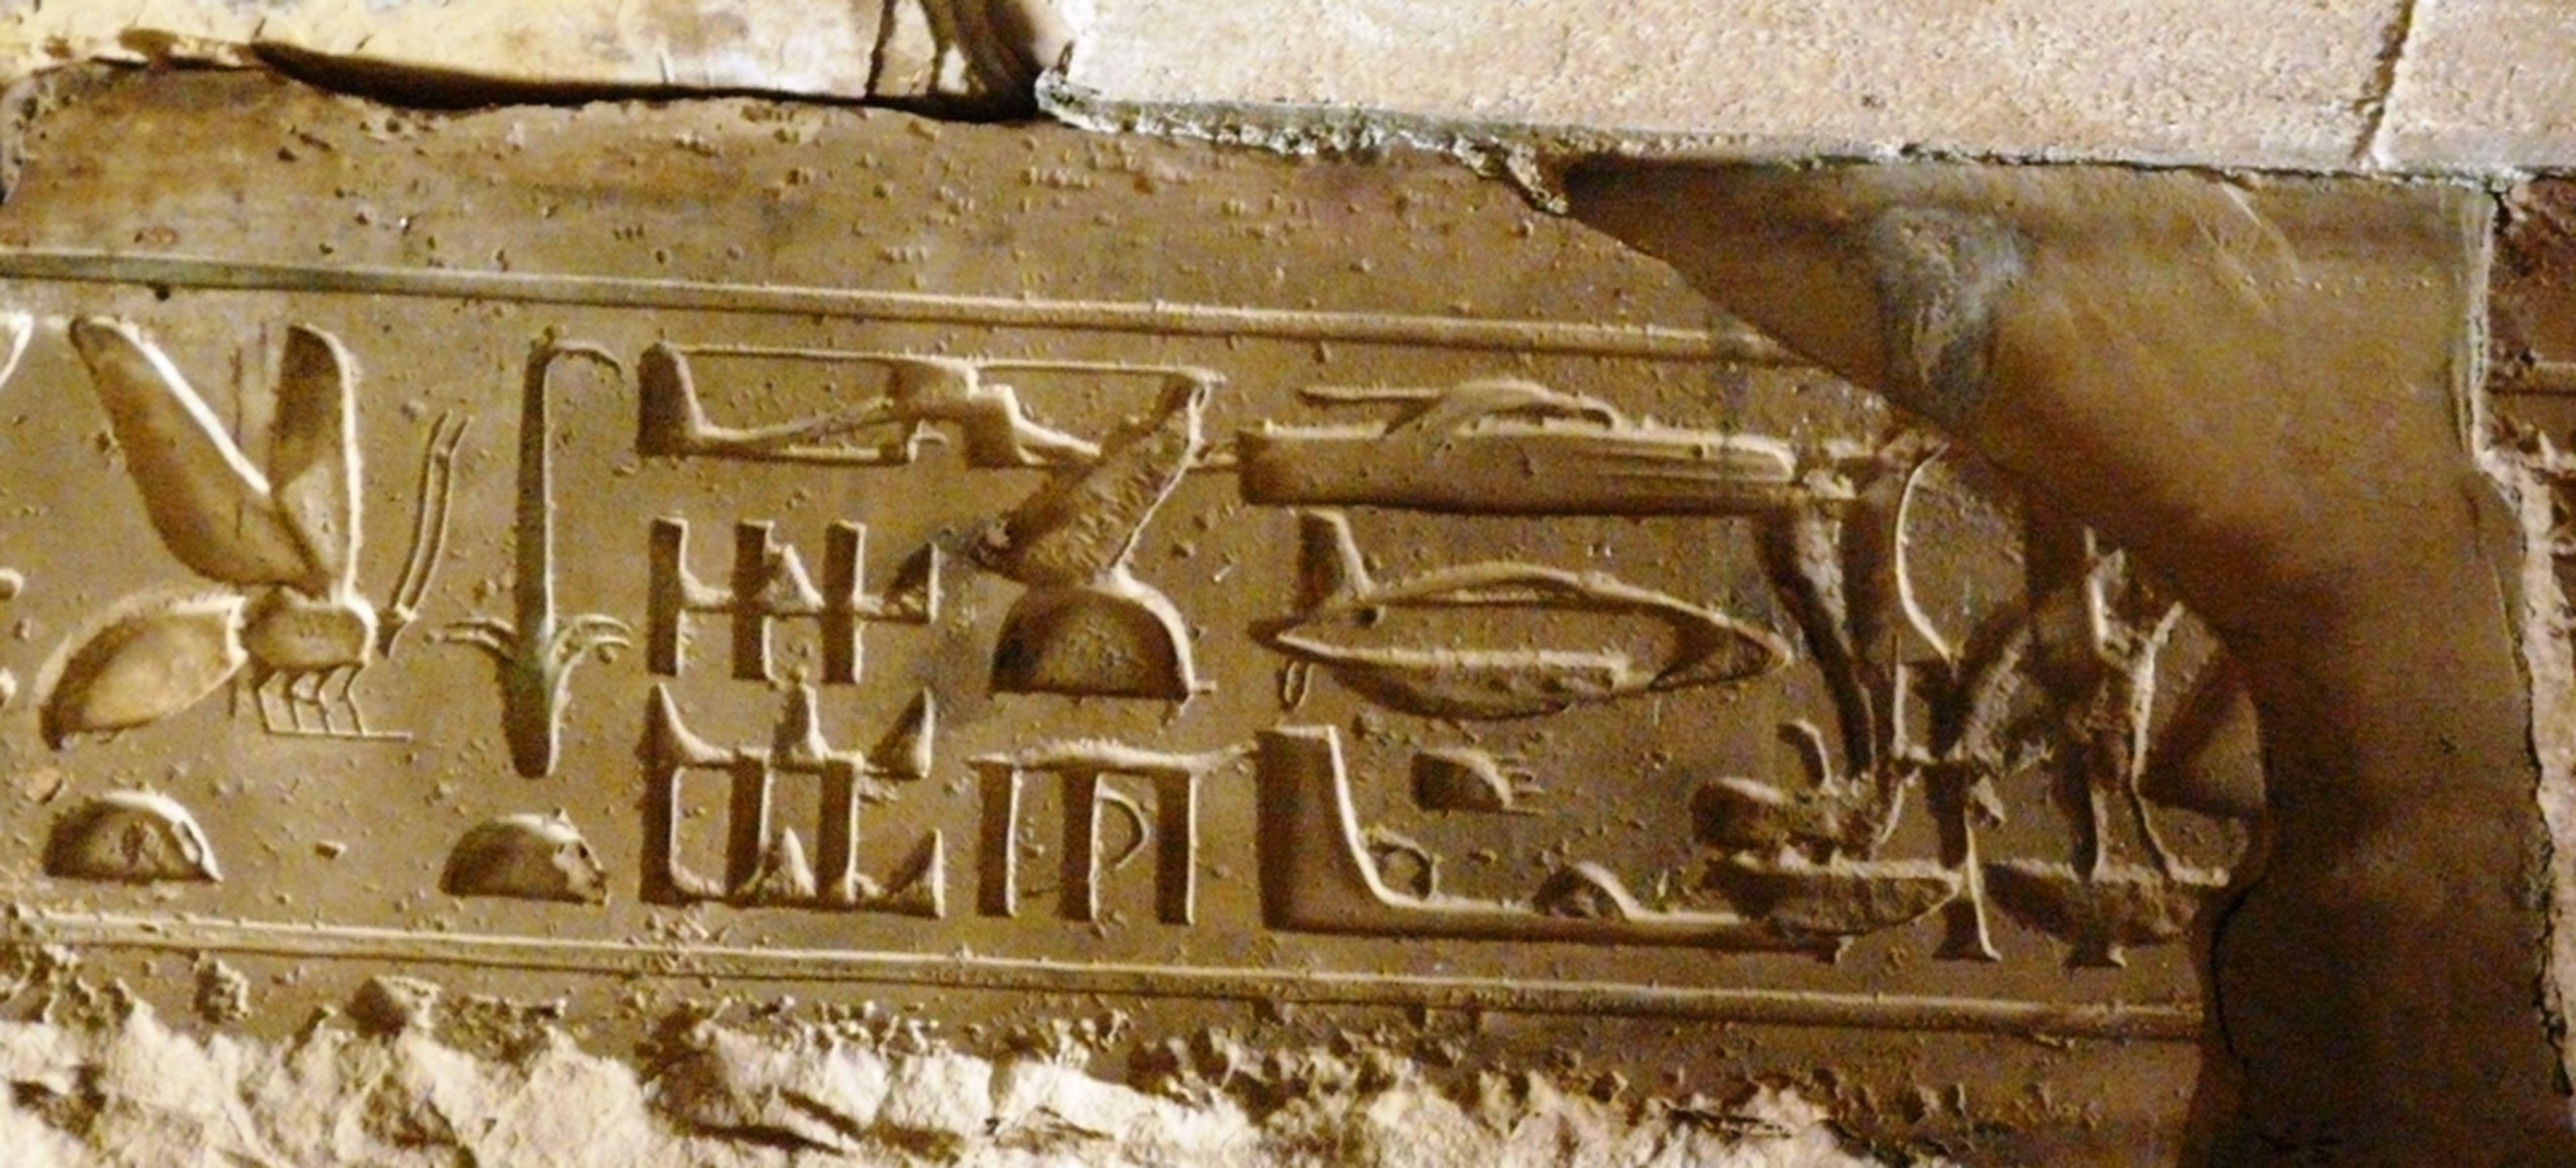 Los supuestos helicópteros de un hieroglifo en Egipto